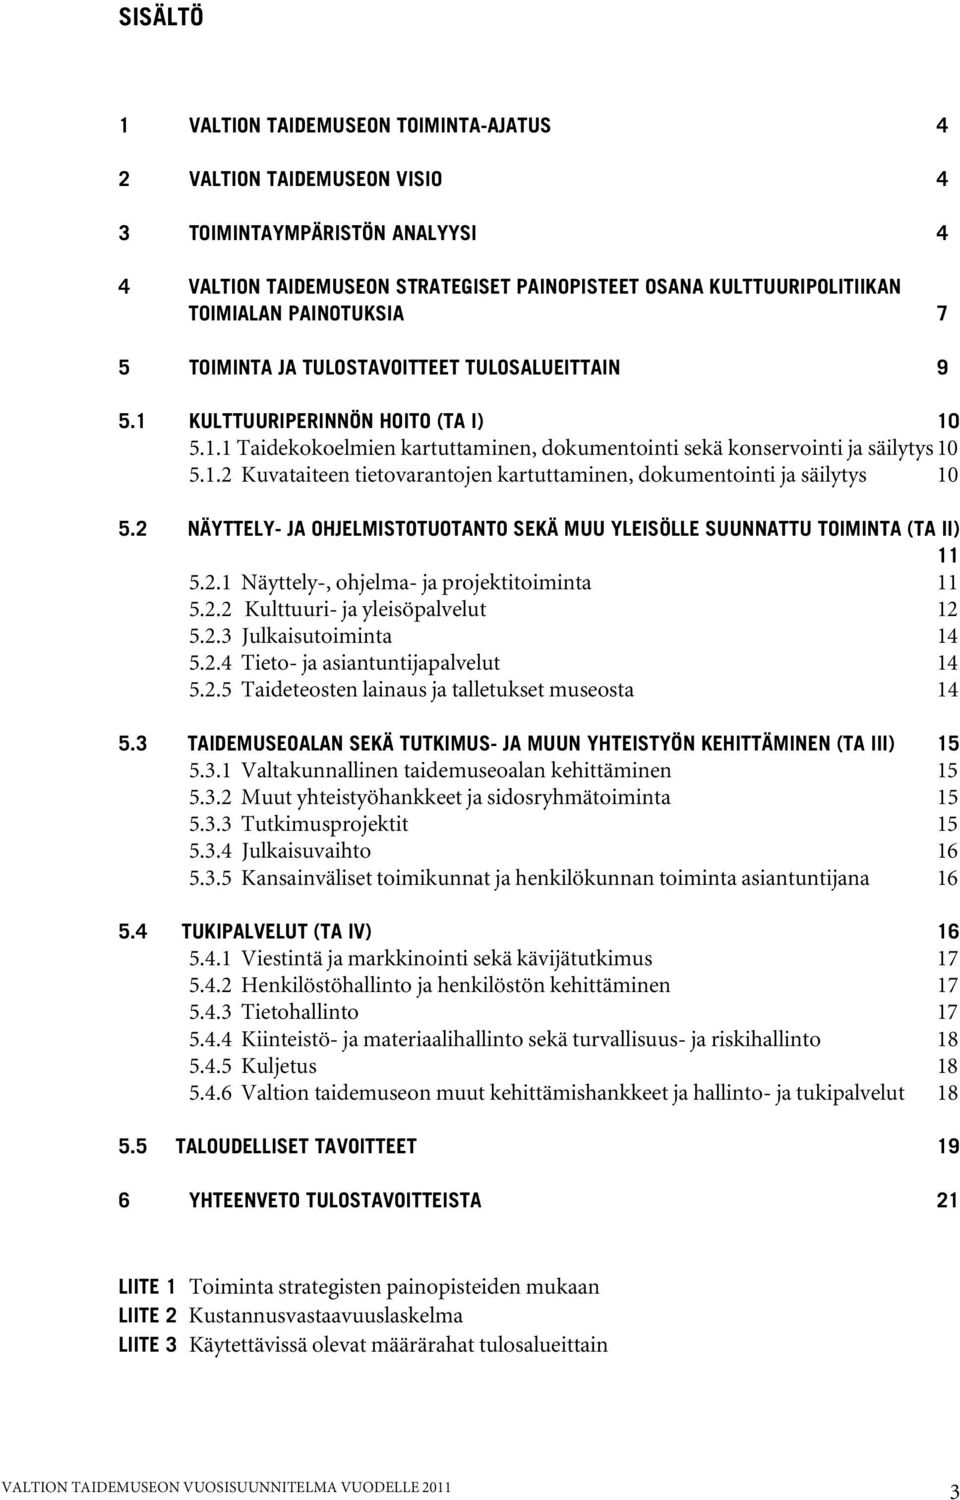 2 NÄYTTELY- JA OHJELMISTOTUOTANTO SEKÄ MUU YLEISÖLLE SUUNNATTU TOIMINTA (TA II) 11 5.2.1 Näyttely-, ohjelma- ja projektitoiminta 11 5.2.2 Kulttuuri- ja yleisöpalvelut 12 5.2.3 Julkaisutoiminta 14 5.2.4 Tieto- ja asiantuntijapalvelut 14 5.